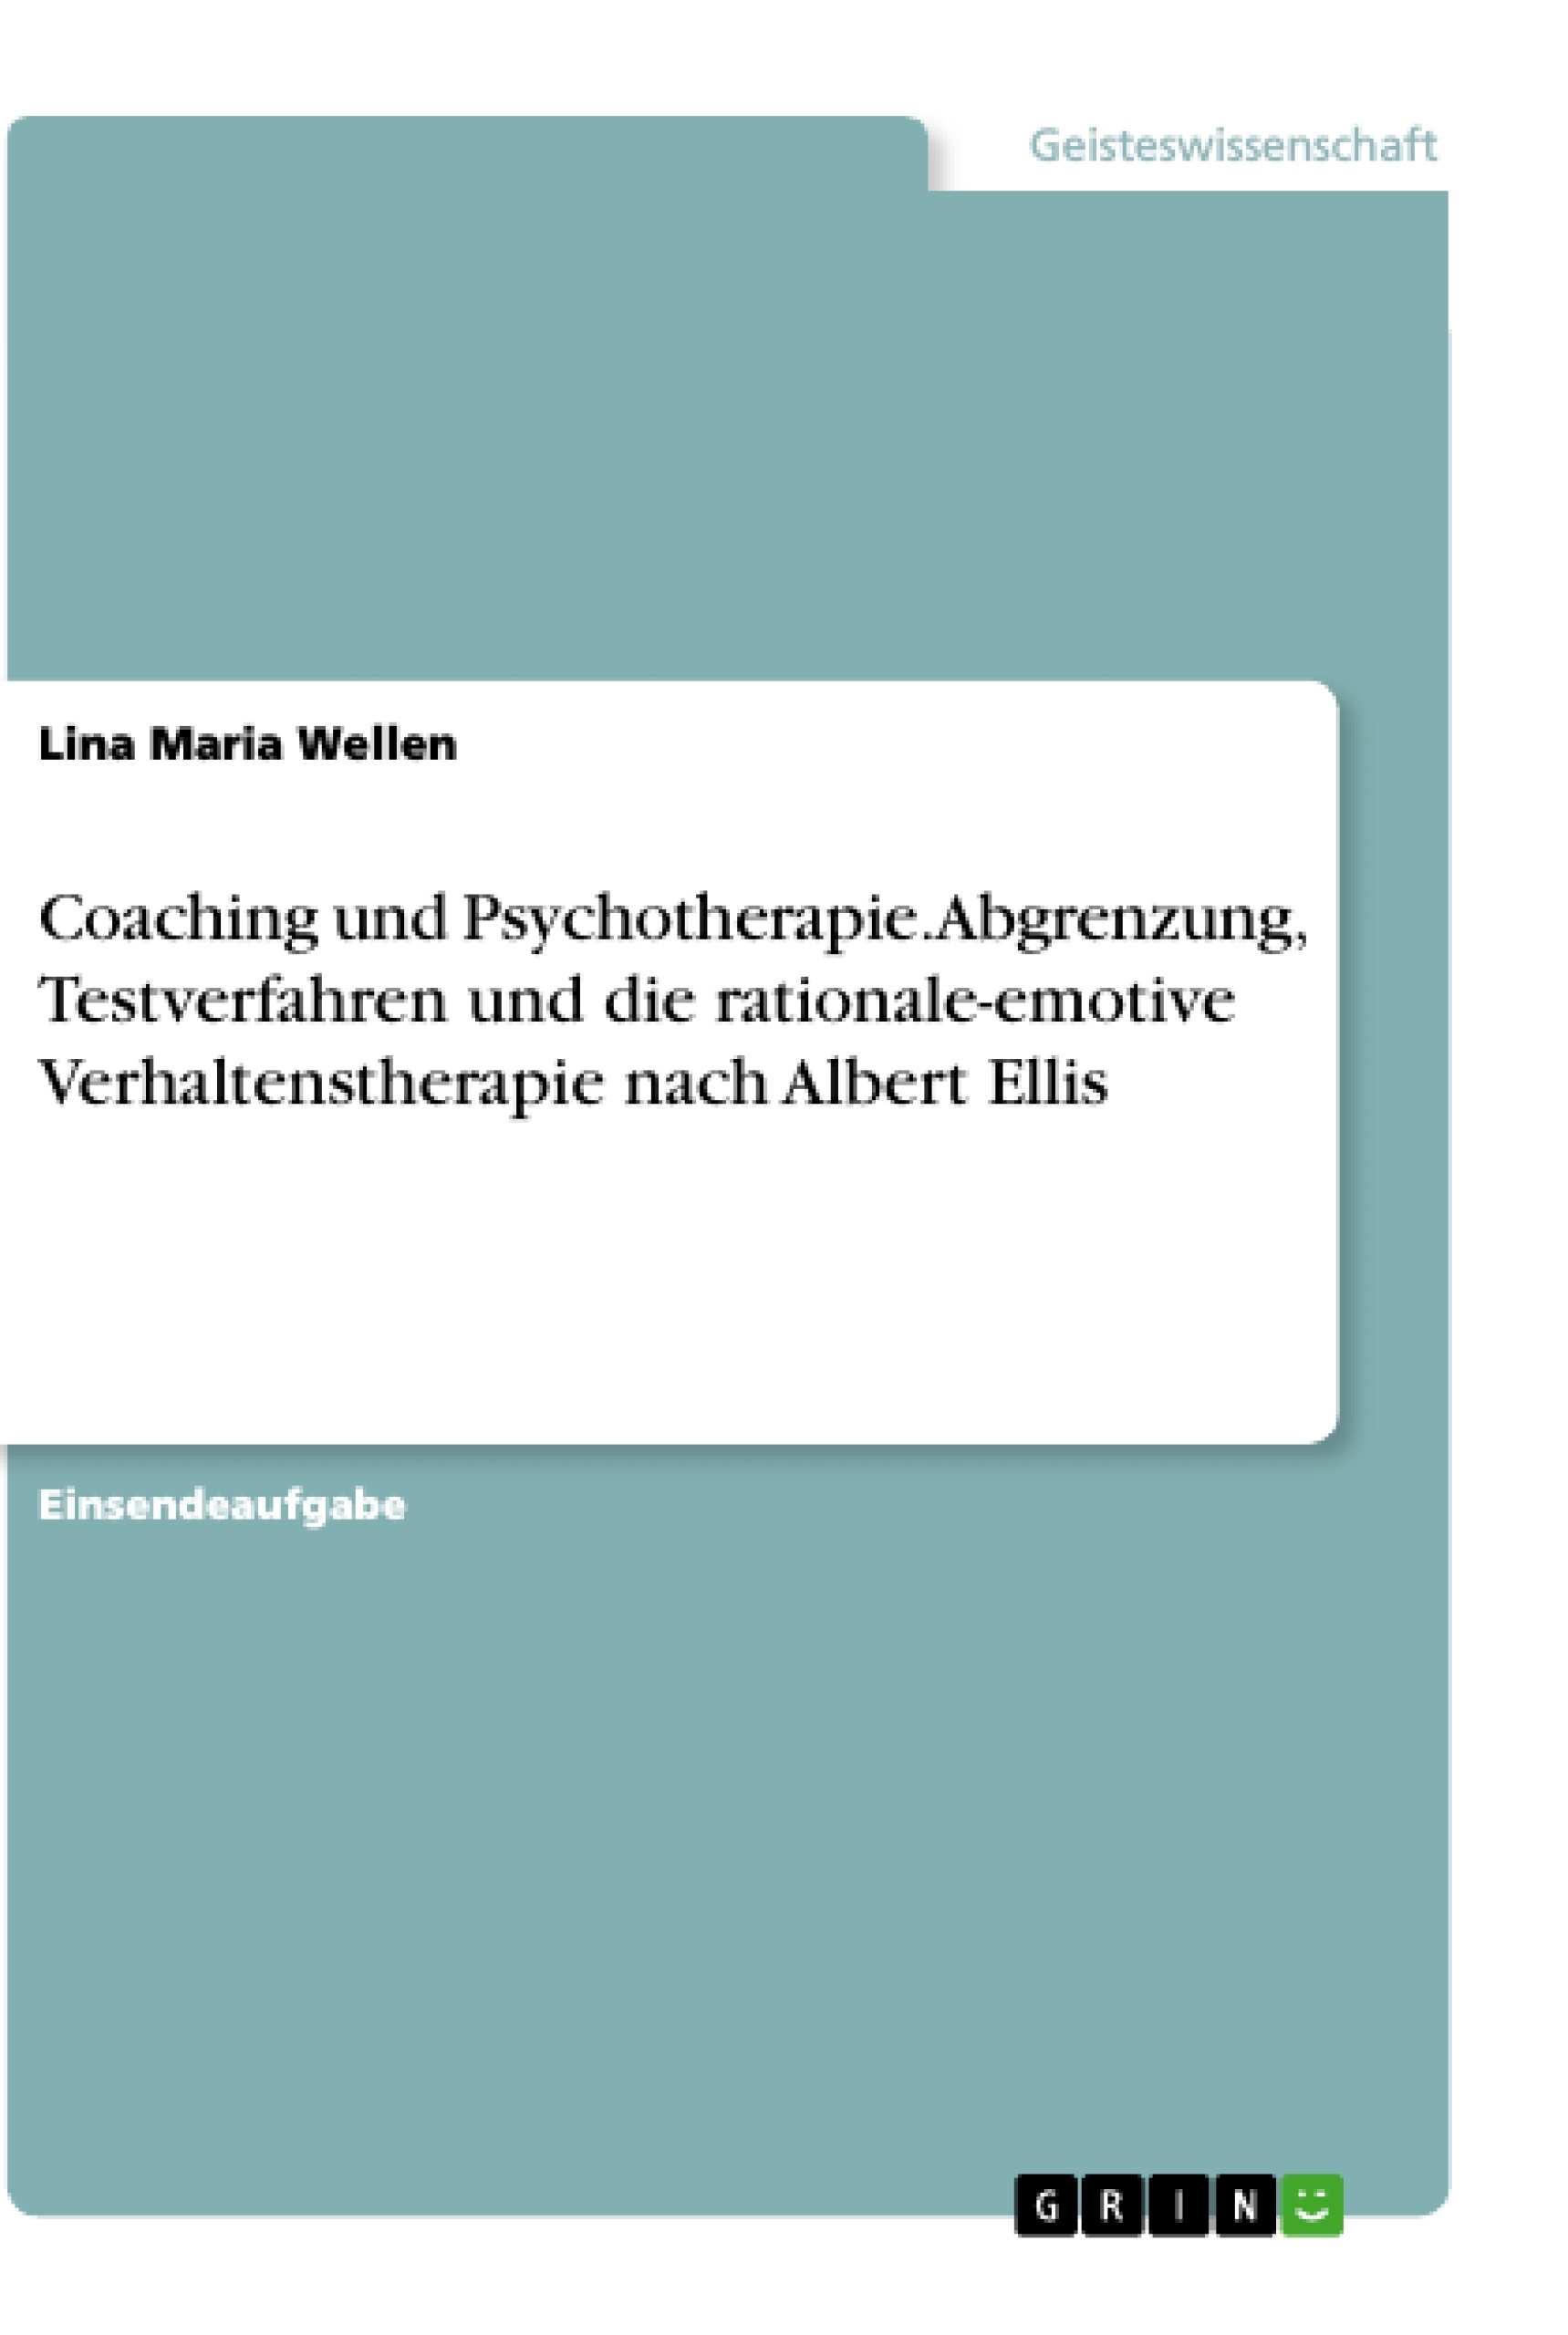 Titel: Coaching und Psychotherapie. Abgrenzung, Testverfahren und die rationale-emotive Verhaltenstherapie nach Albert Ellis